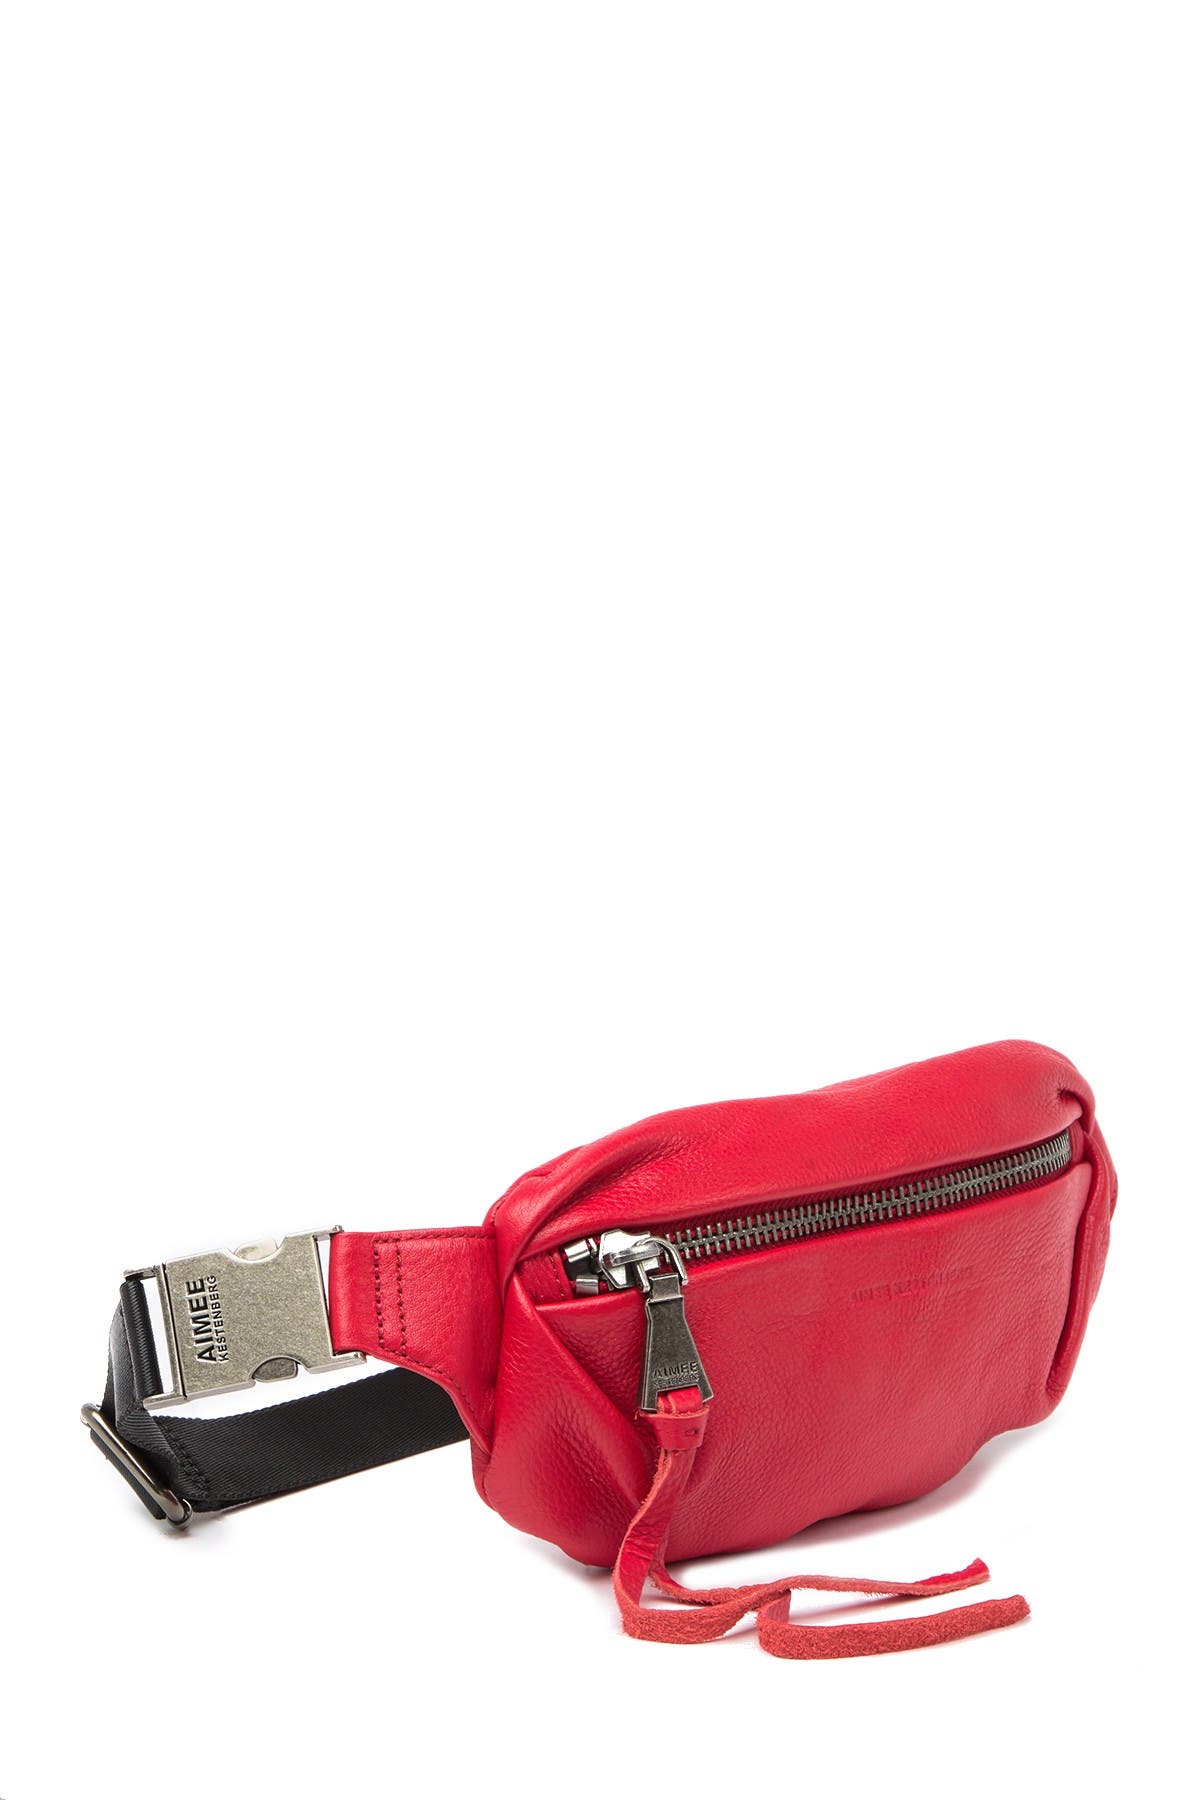 Aimee Kestenberg | Milan Leather Belt Bag | Nordstrom Rack